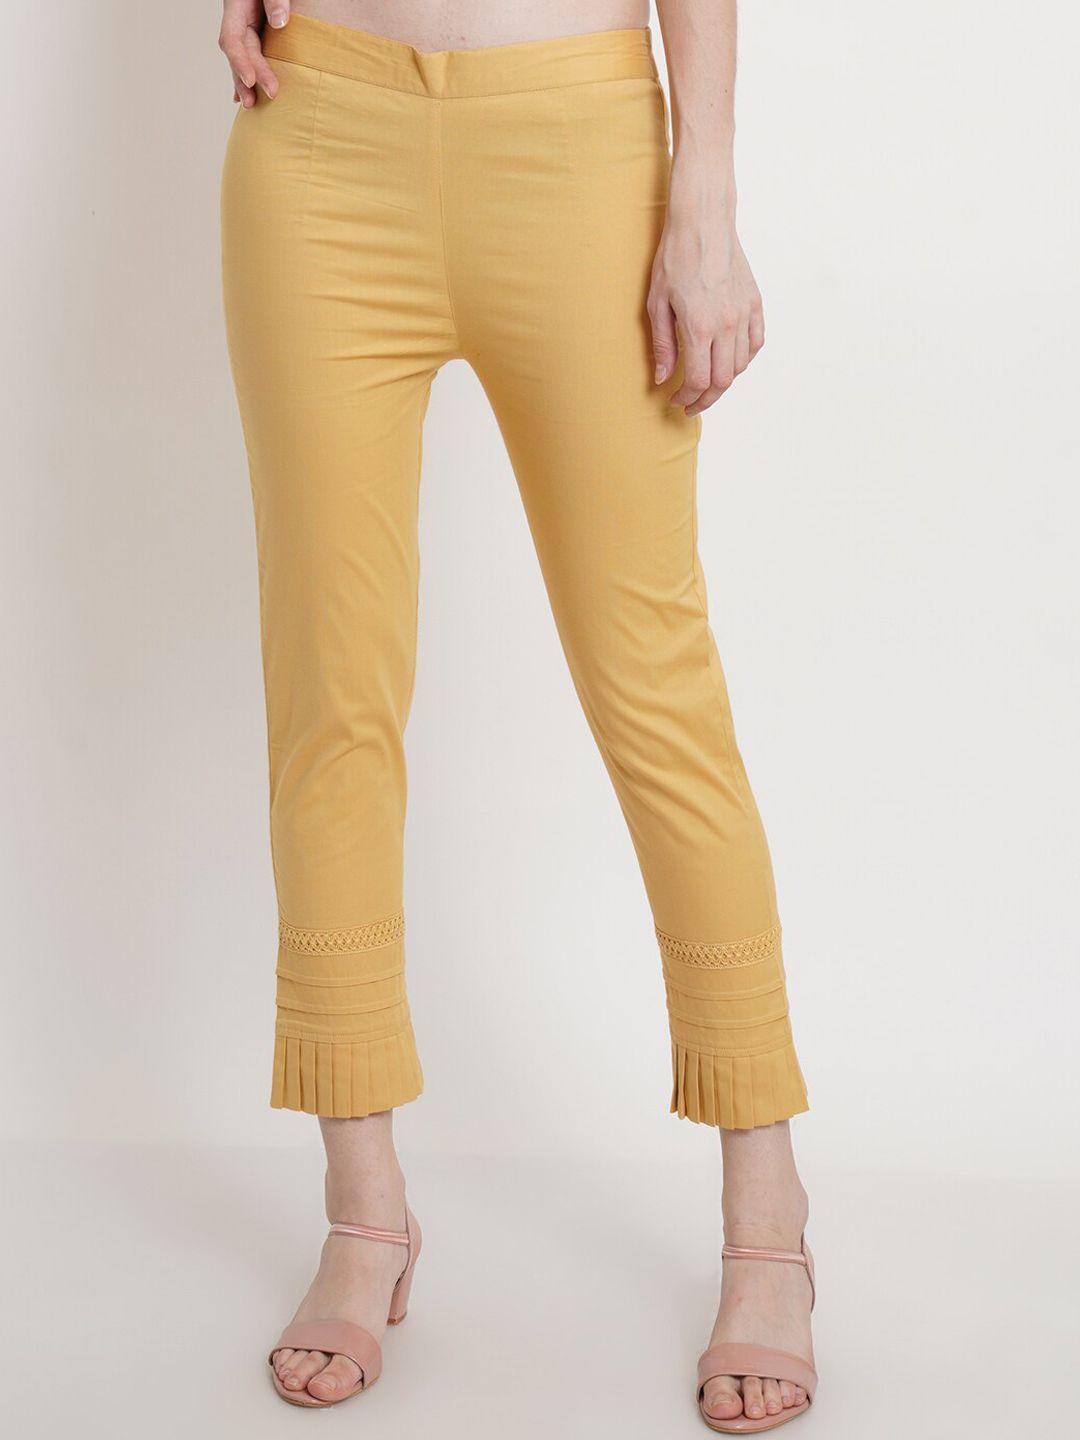 popwings women gold-toned smart trousers